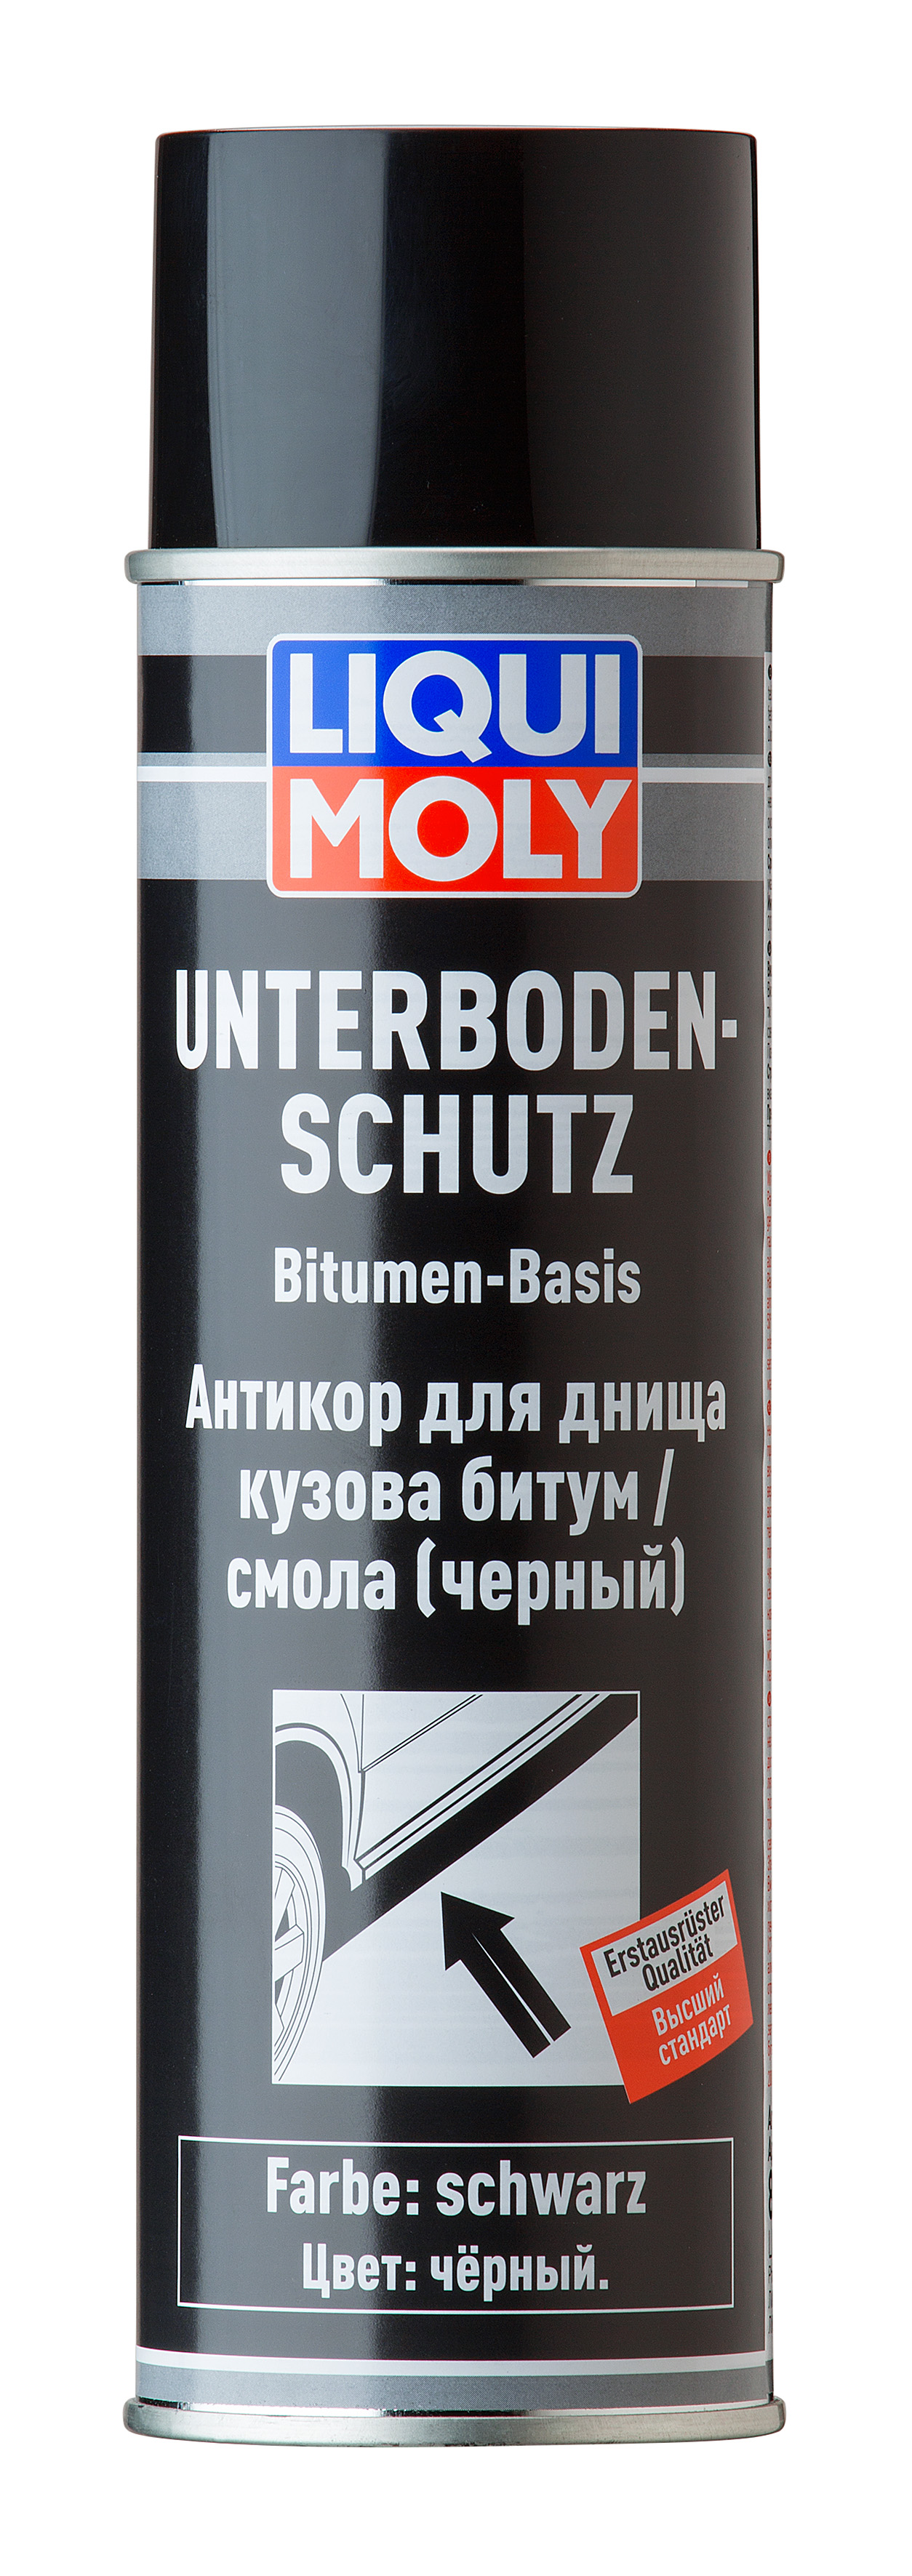 Антикор для днища кузова битум/смола (черный) Unterboden-Schutz Bitumen schwarz, 500мл - Liqui Moly 8056